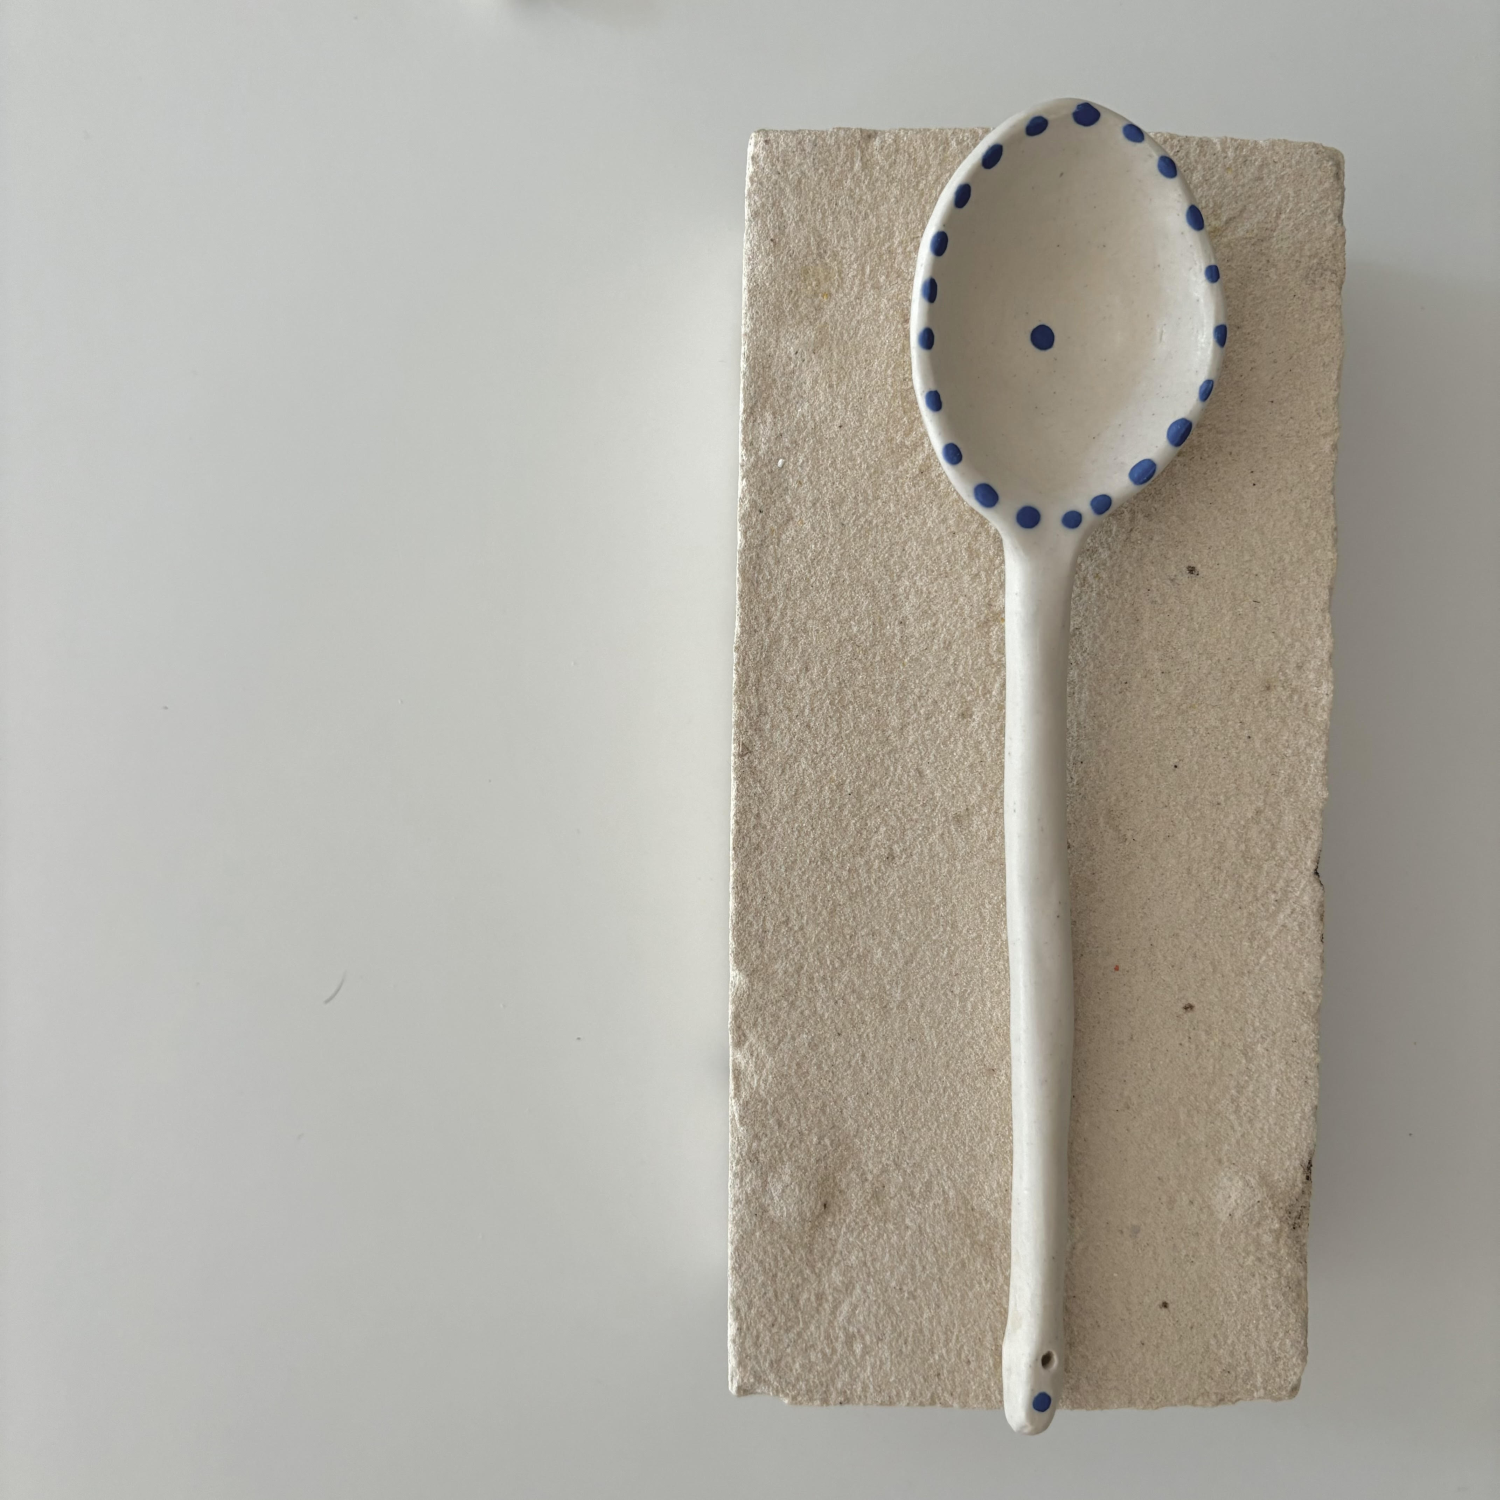 Mati Ceramics: Spoon 1 Product Image 1 of 1